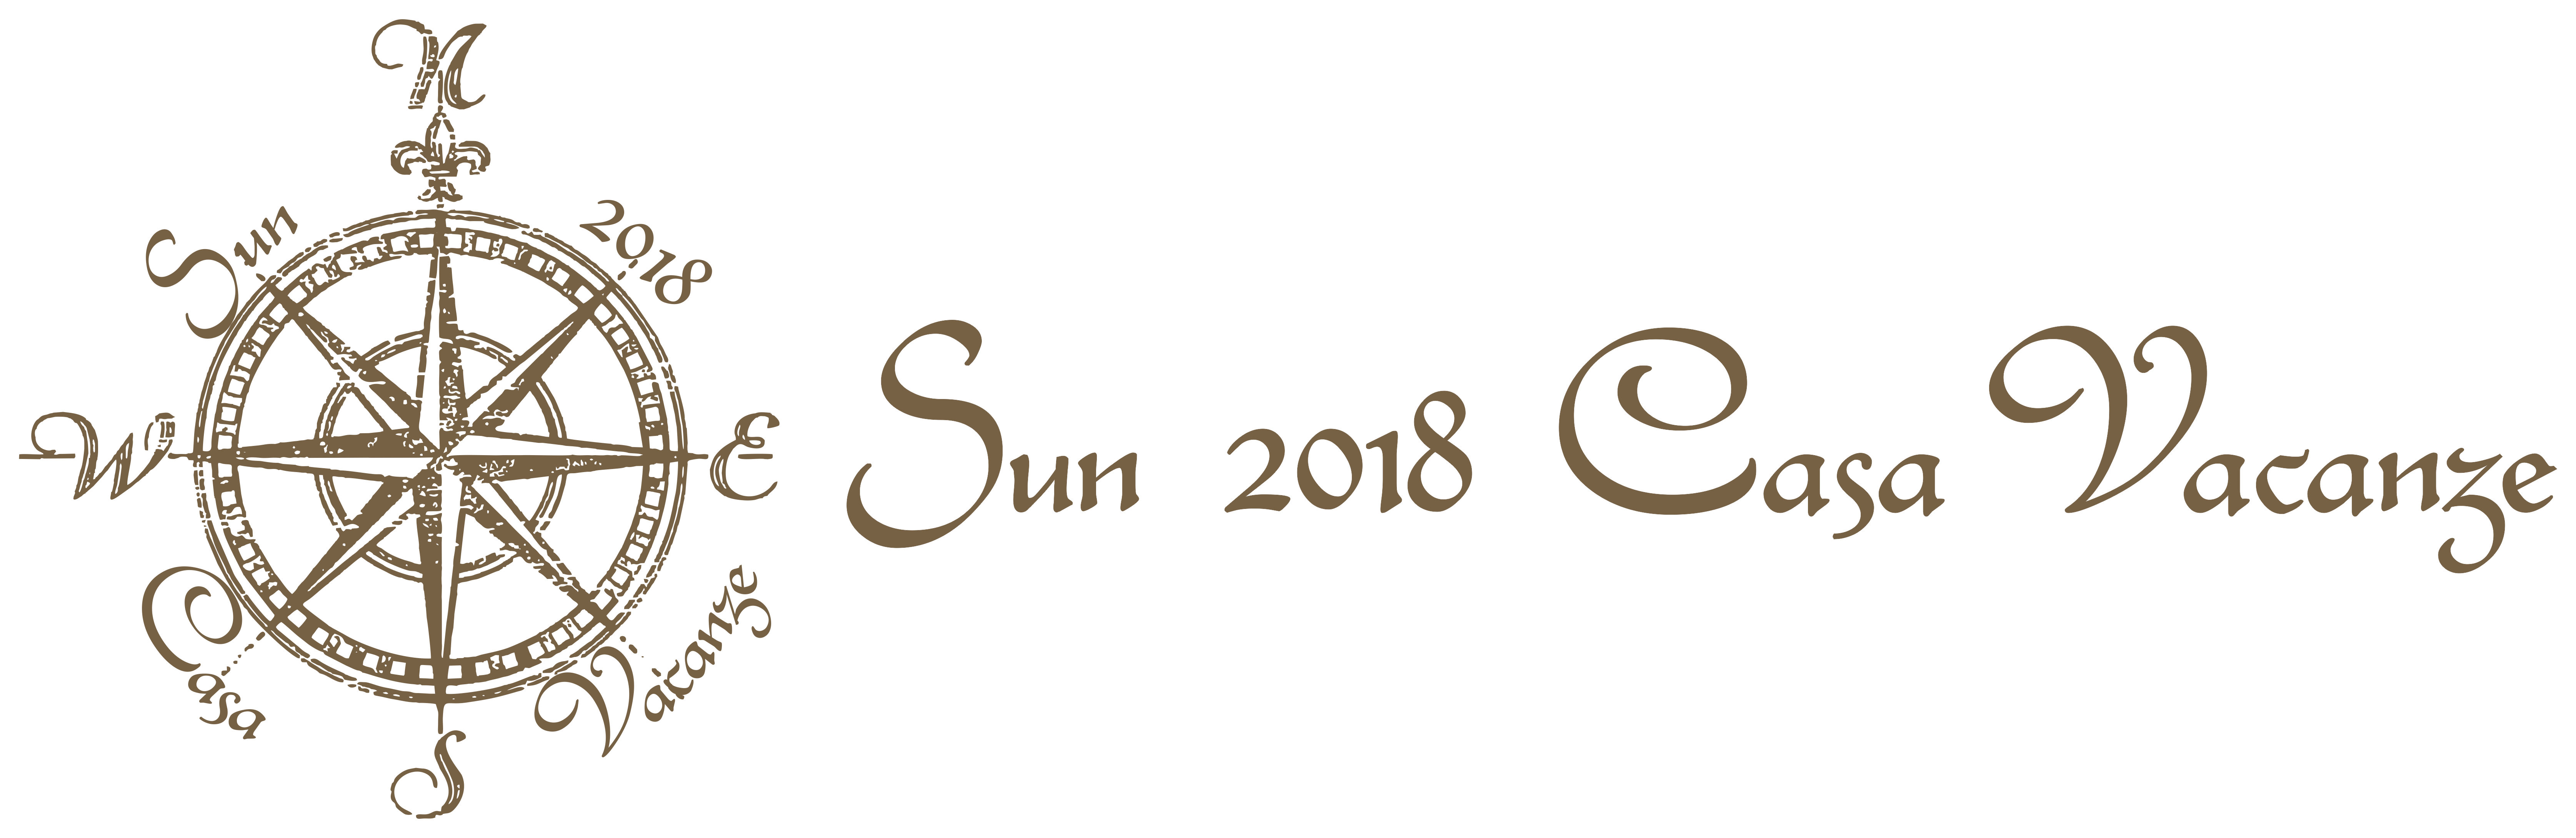 Sun 2018